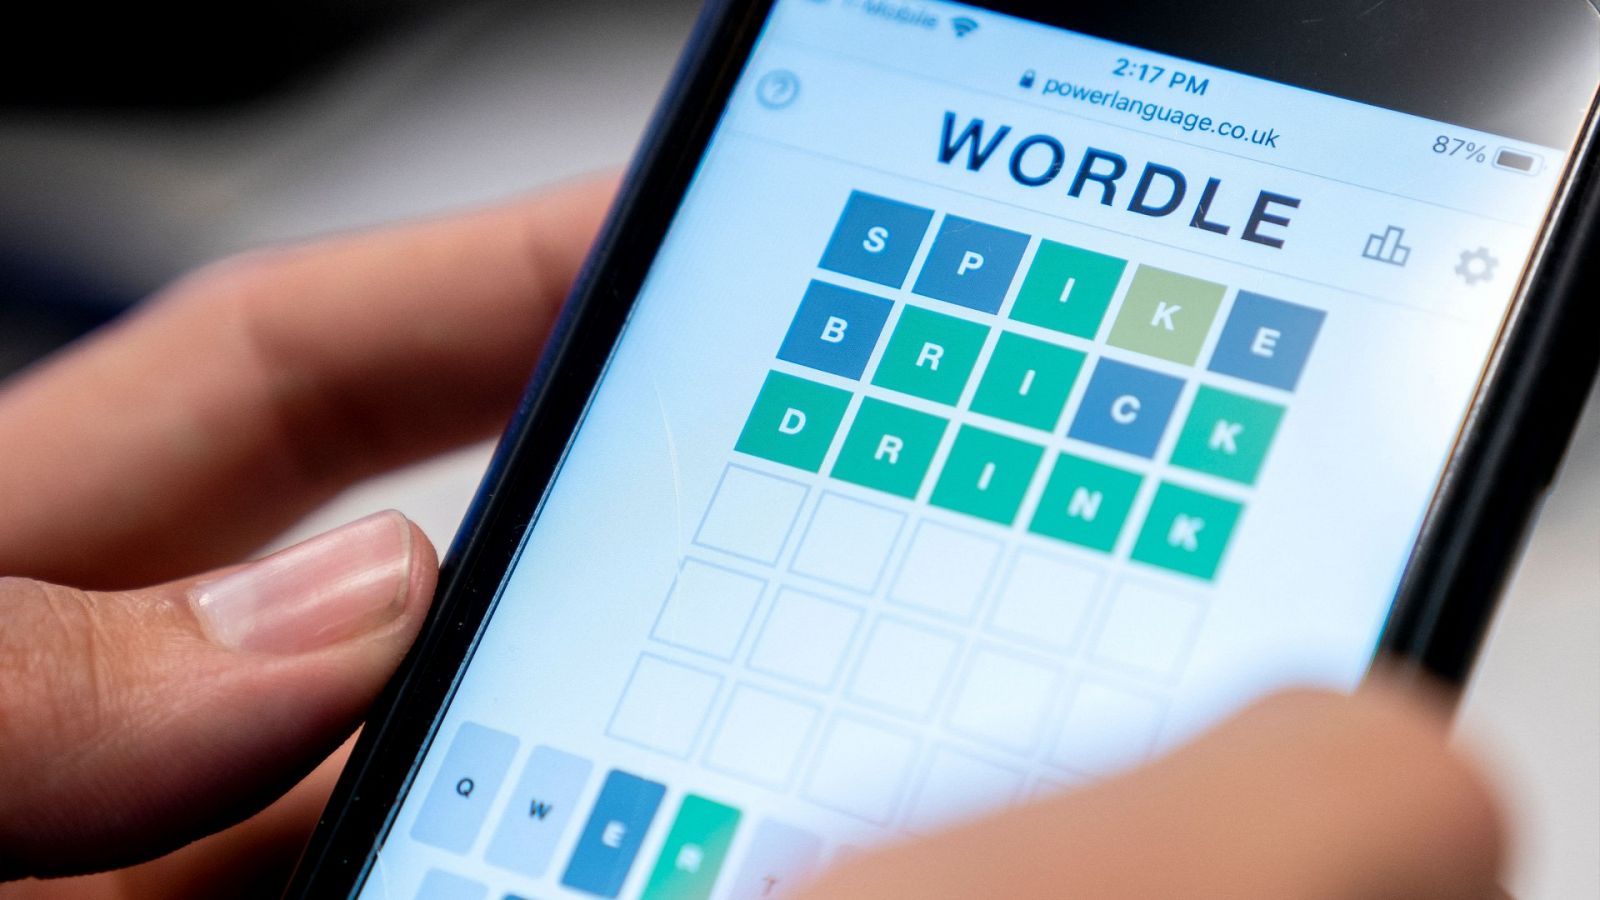 Wordle continuará siendo gratuito para jugadores nuevos y existentes.